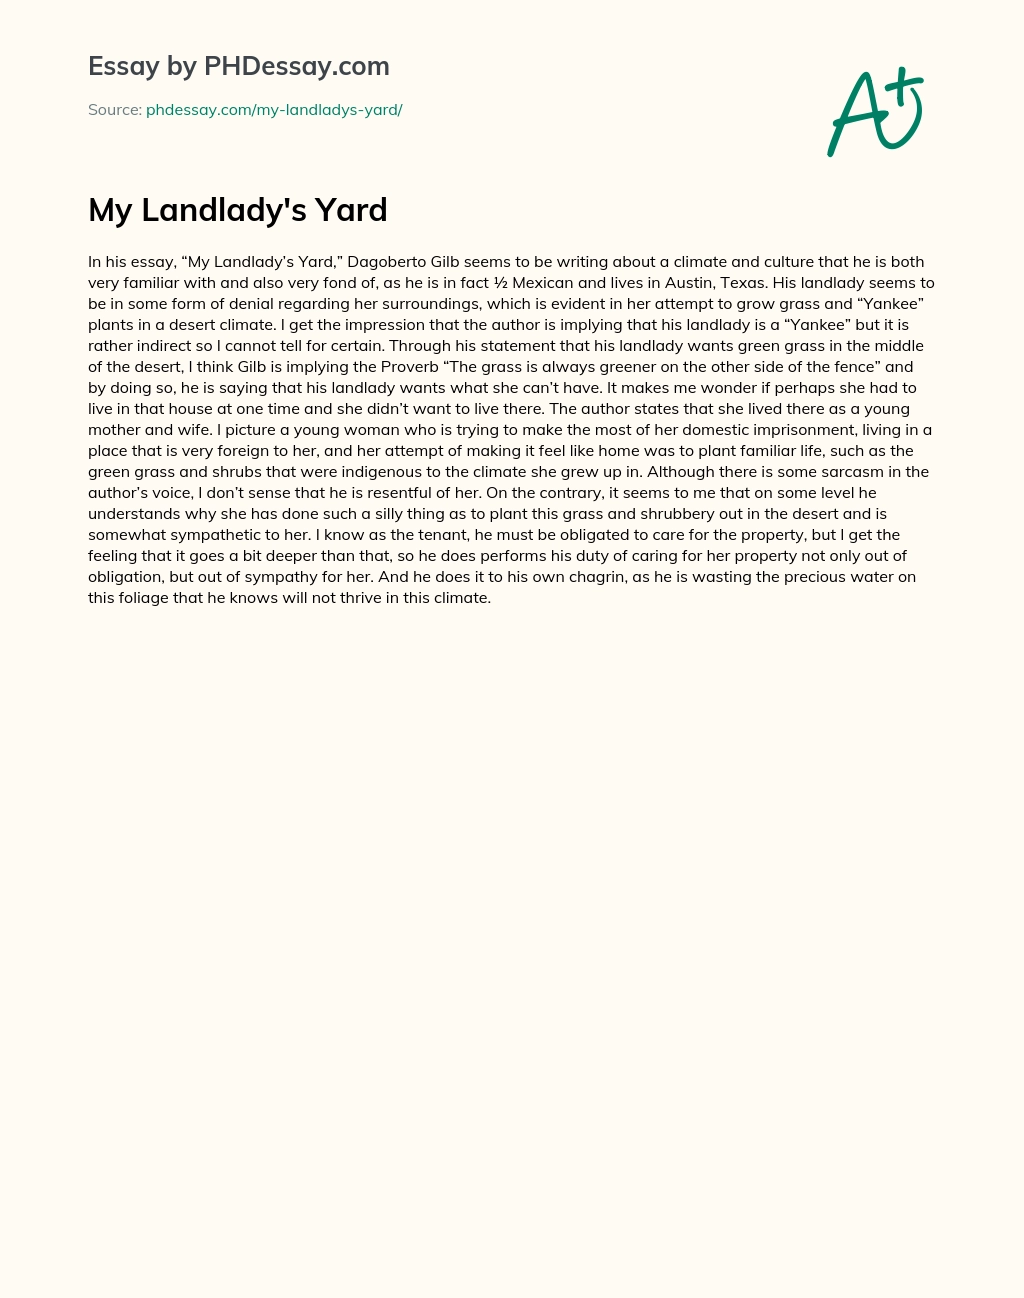 My Landlady’s Yard essay